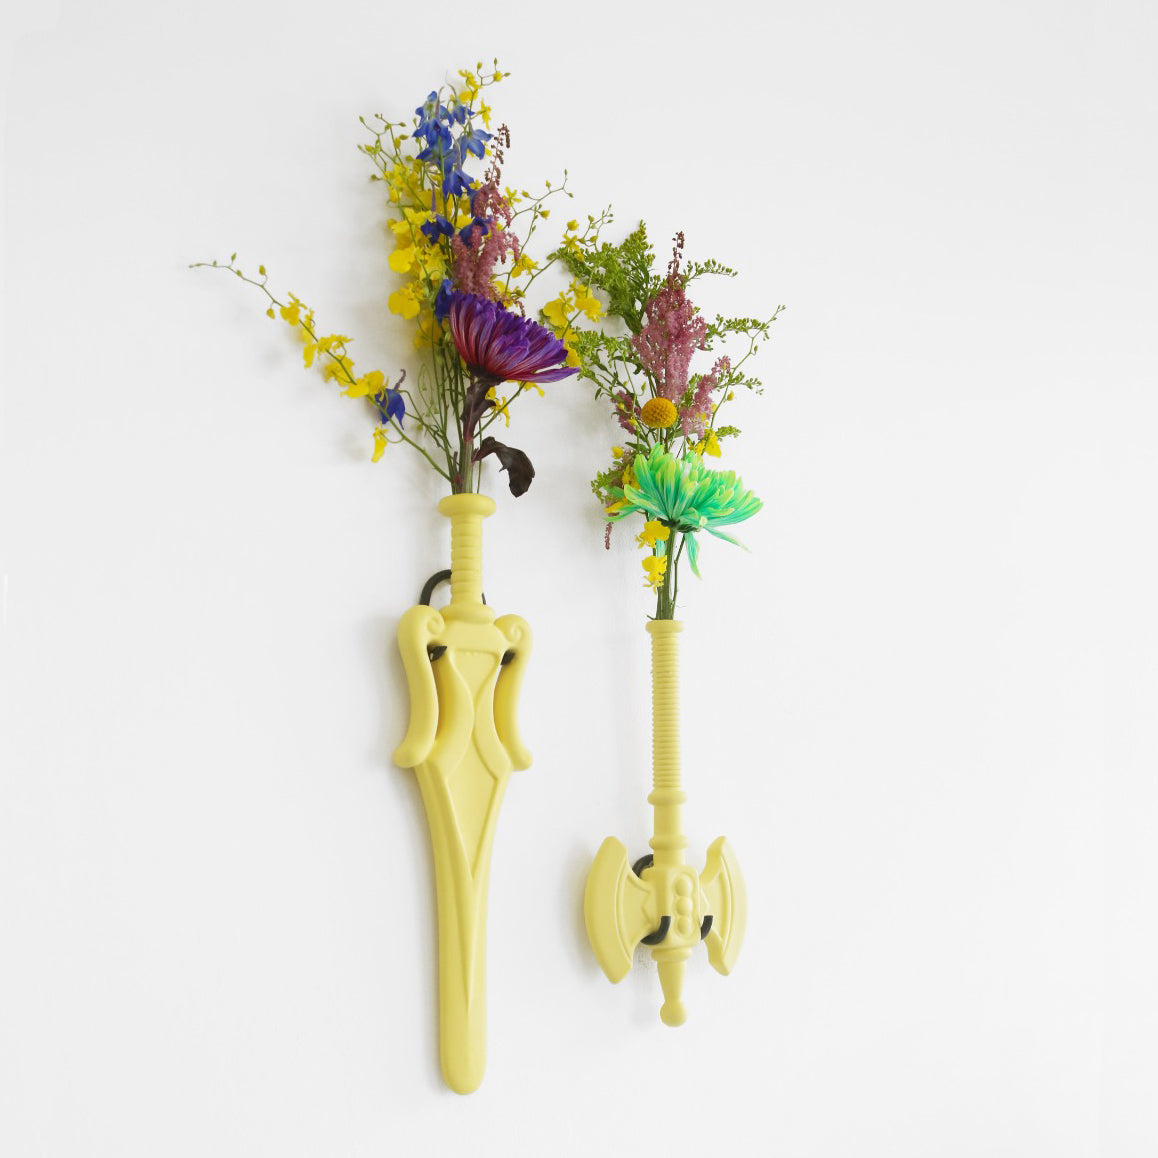 Flower Power Ax Vaas • Interieur • Een wandvaas in de vorm van een bijl of een zwaard. Handgemaakt van keramiek en ontworpen door Jasmin Djerzic. Hoewel dit symbolen lijken van geweld, staan ze voor de ontwerper gelijk aan speelsheid en creativiteit. Net als de speelgoedwapens voor kinderen.